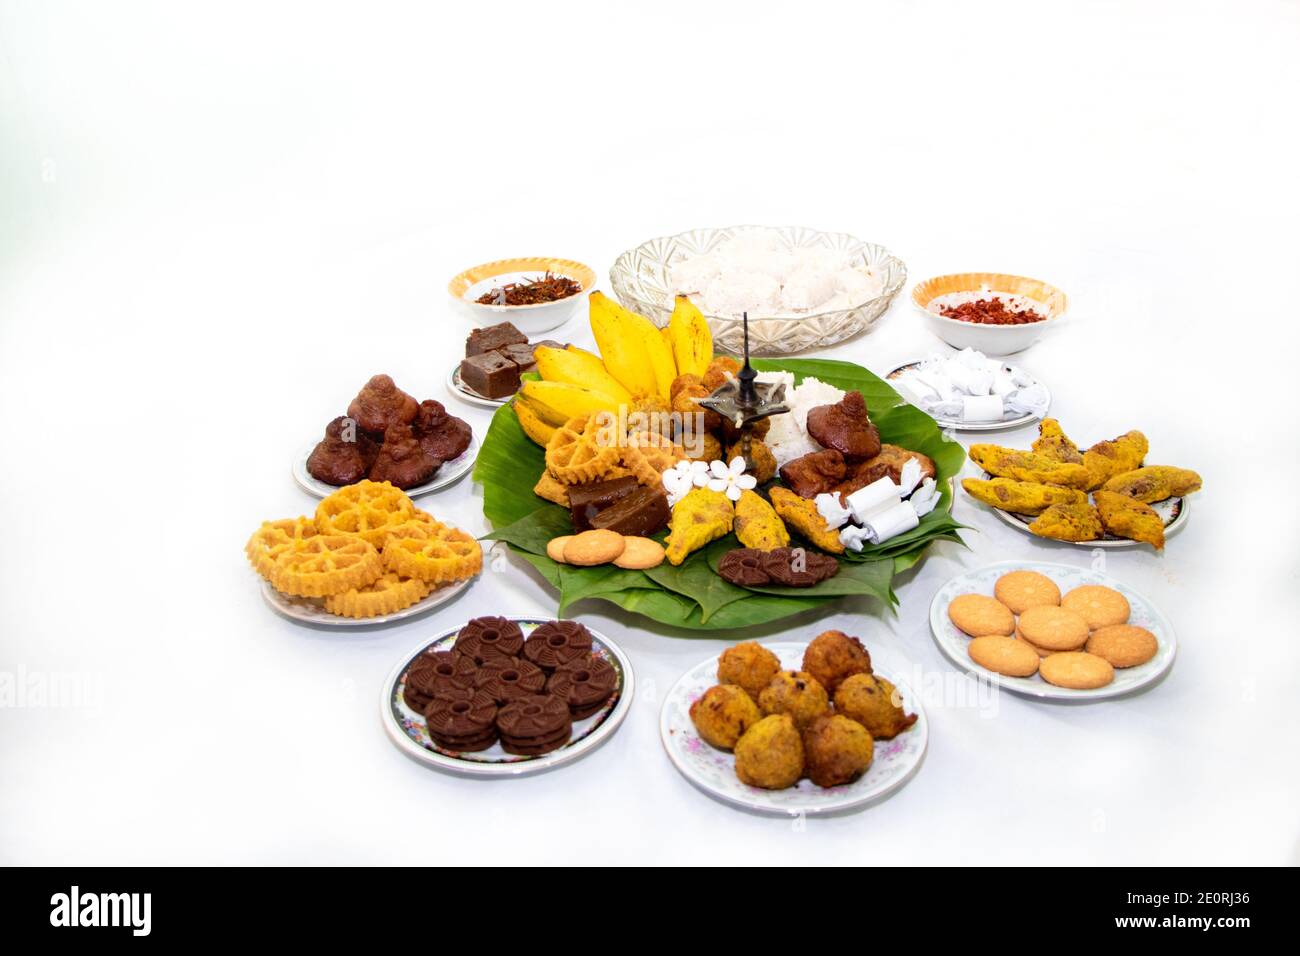 Sinala Tamil New Year Foods tradizionali con lampada ad olio. Foto Stock